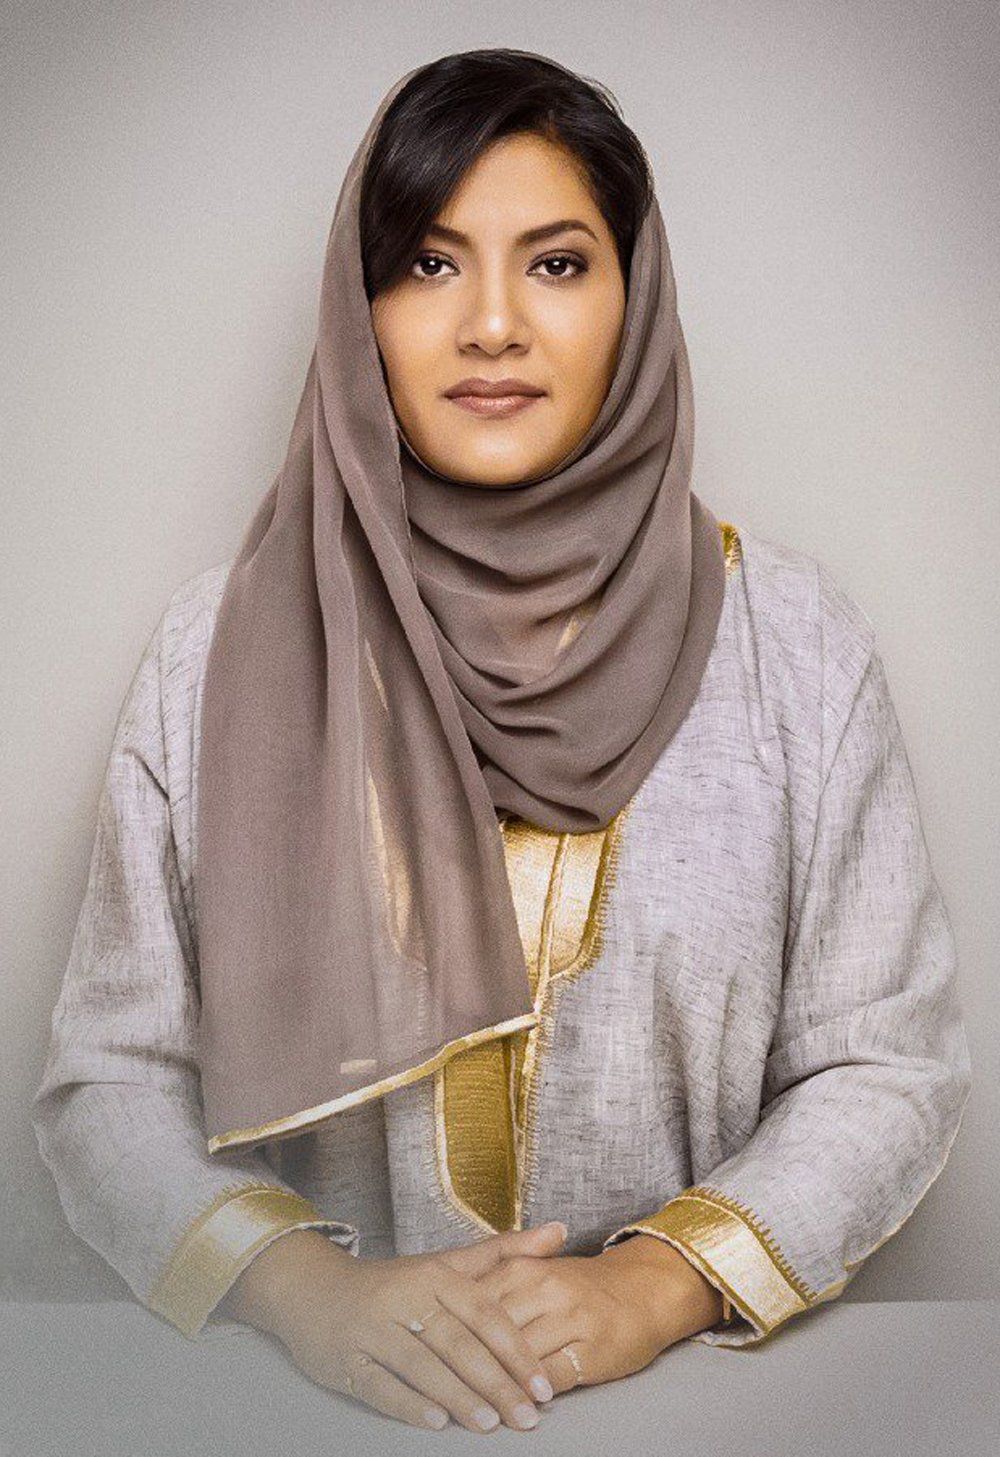 ’رالي جميل‘ يحظى بدعم كريم من صاحبة السمو الملكي الأميرة ريما بنت بندر بن سلطان بن عبدالعزيز آل سعود